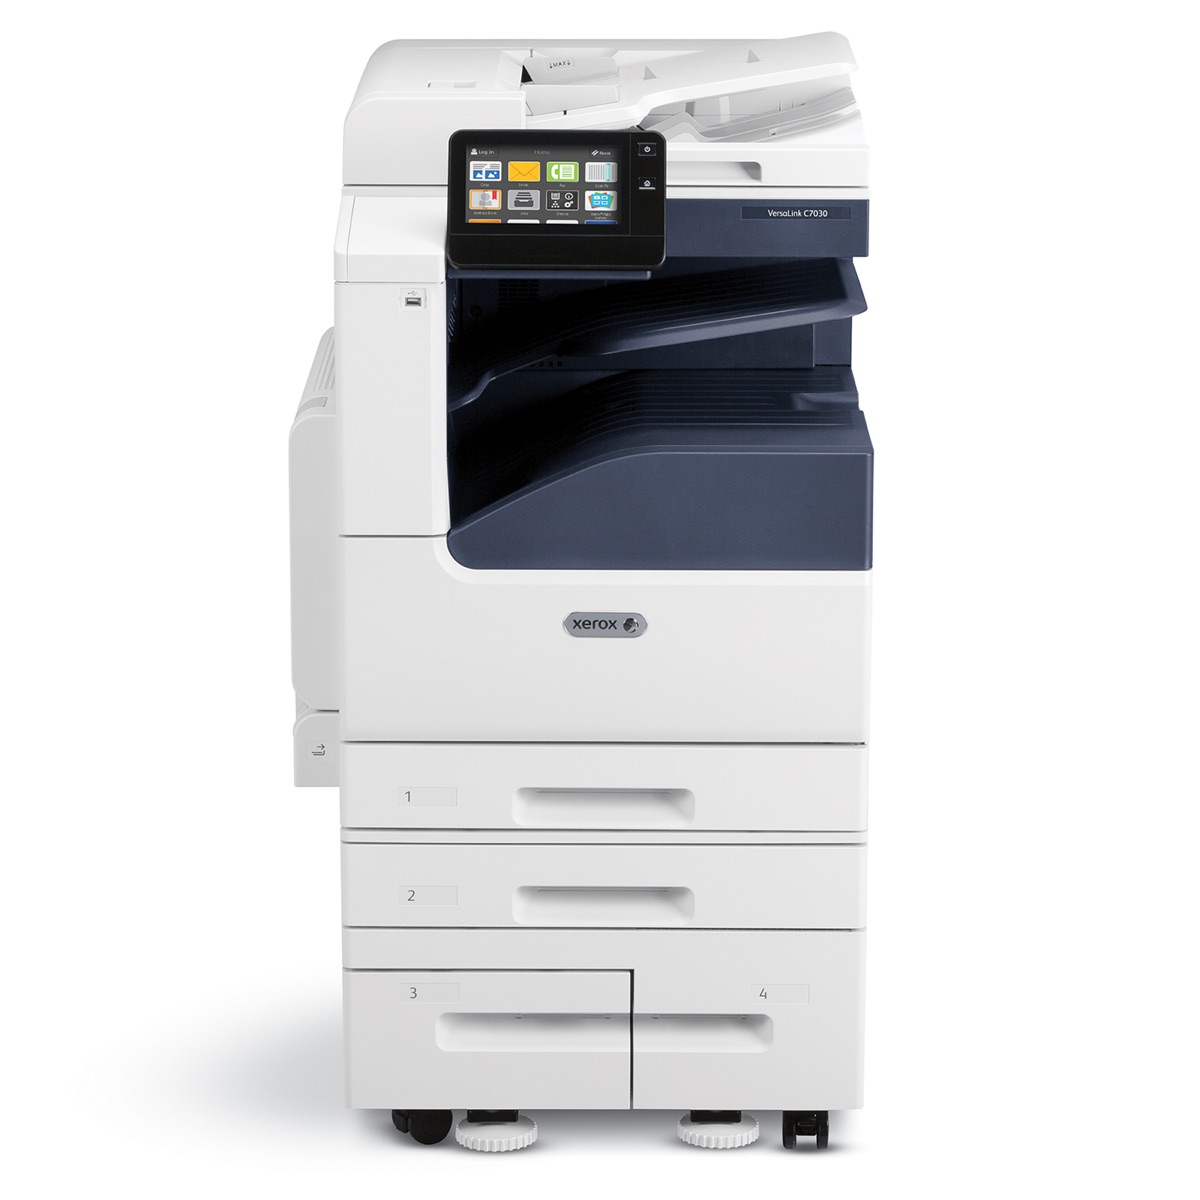 Xerox Copiers:  The Xerox VersaLink C7120/ENGD2 Copier